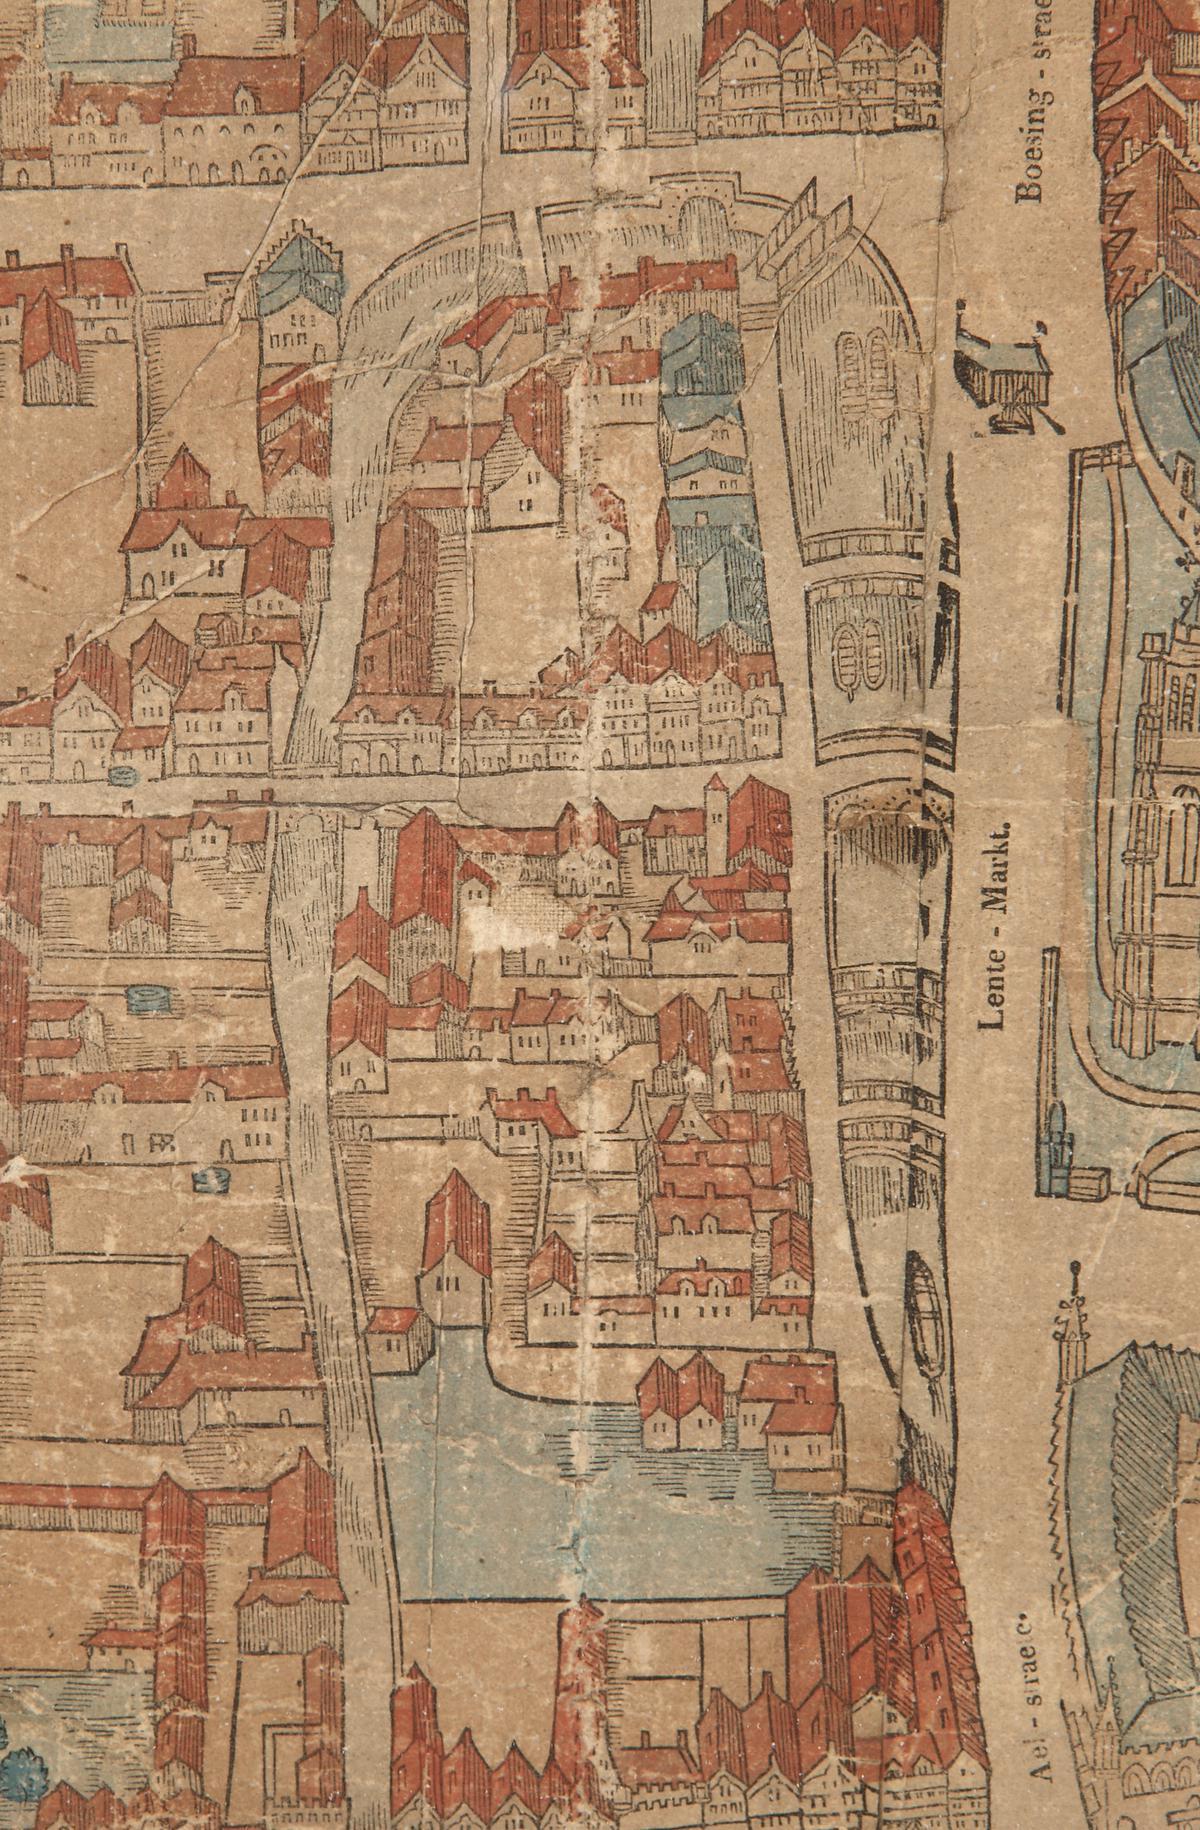 Dit stadsplan toont hoe de Leet - dat toen nog de Lentemarkt heette - er rond 1550 uit zag. Rechts bovenaan zie je de laad- en loskraan langs de kade van de Ieperlee.© Yper Museum